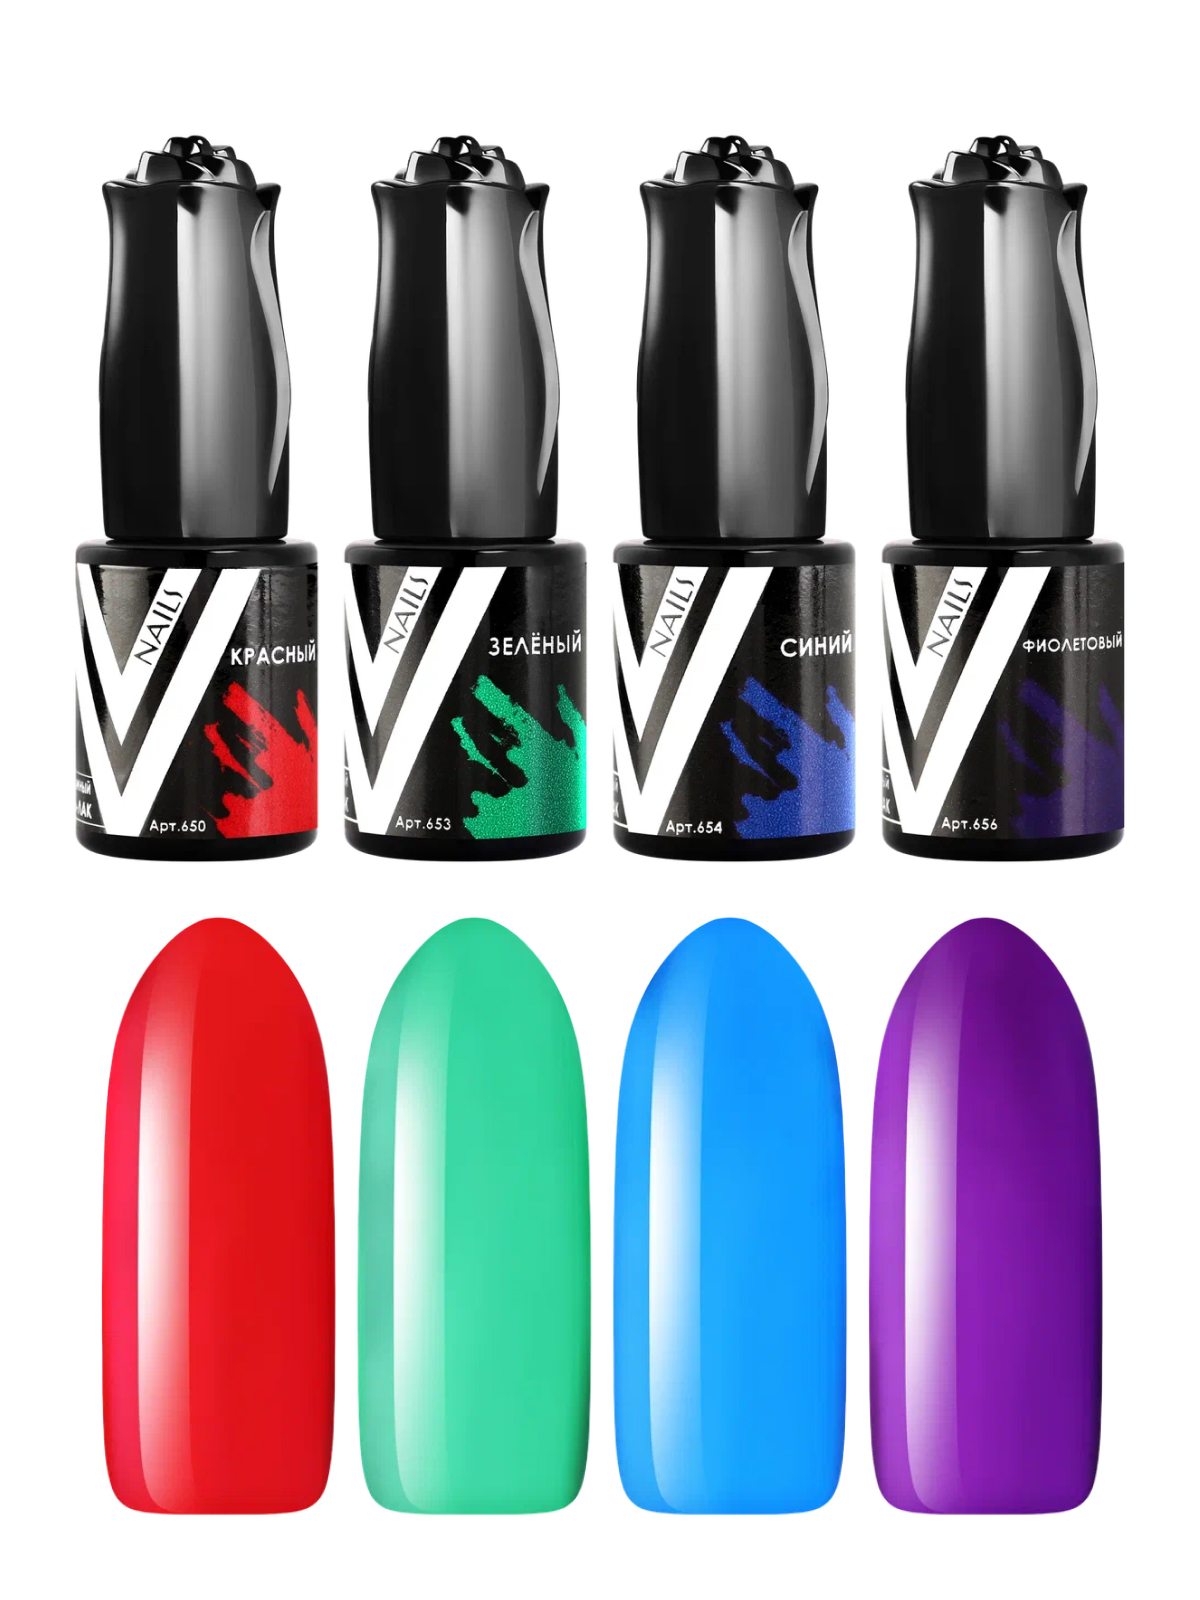 Набор гель лаков для ногтей Vogue Nails гель-лаки витражные 4 шт х 10 мл